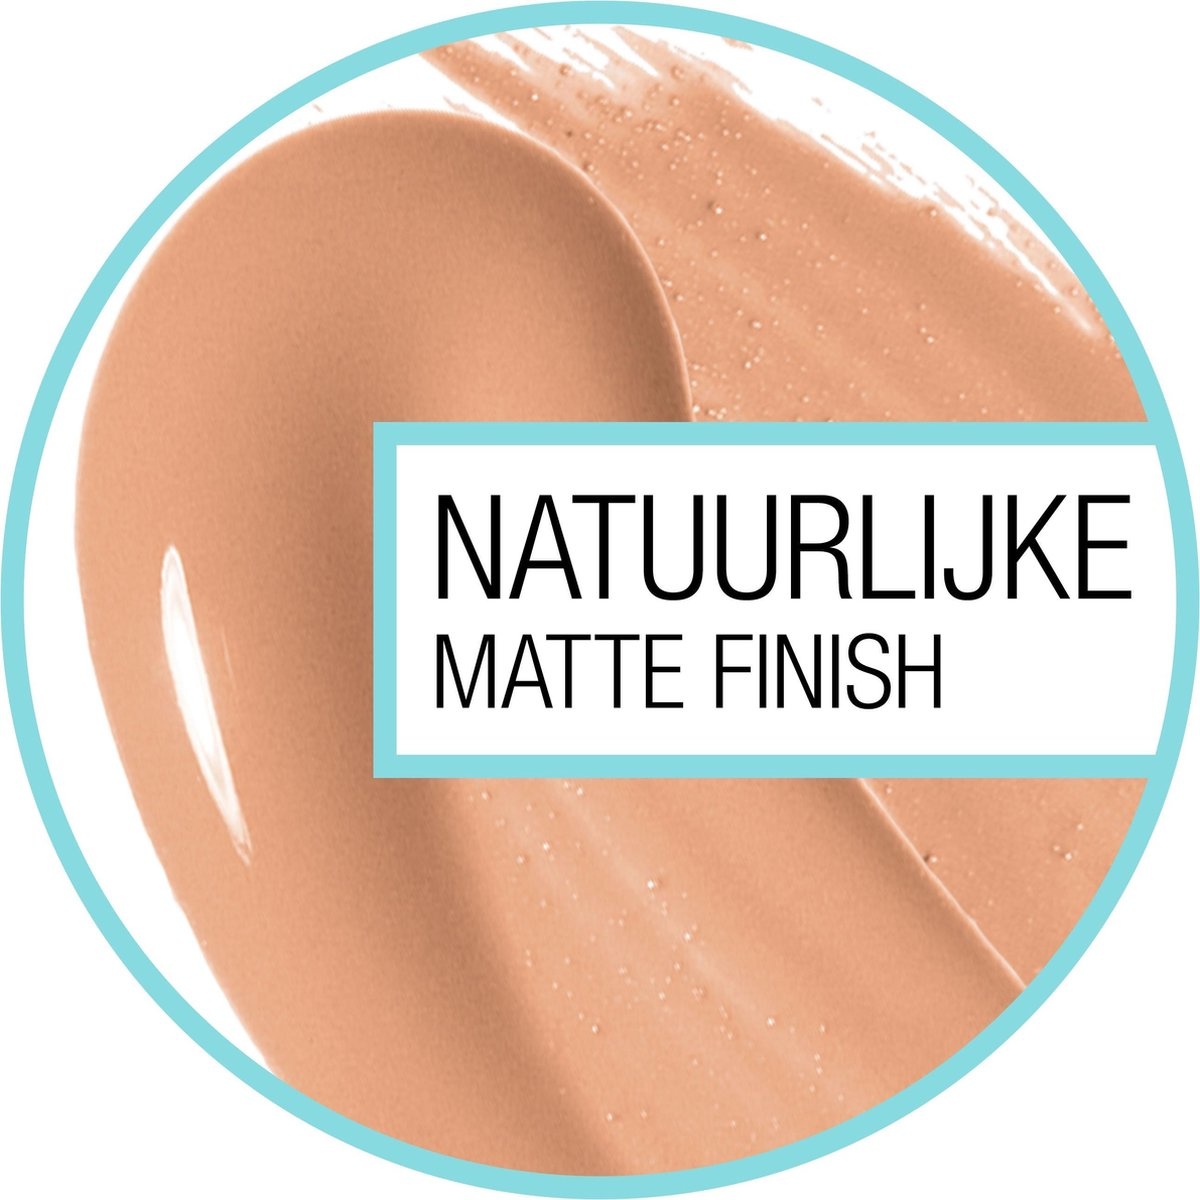 Fond de teint mat et sans pores Fit Me de Maybelline - 128 Warm Nude